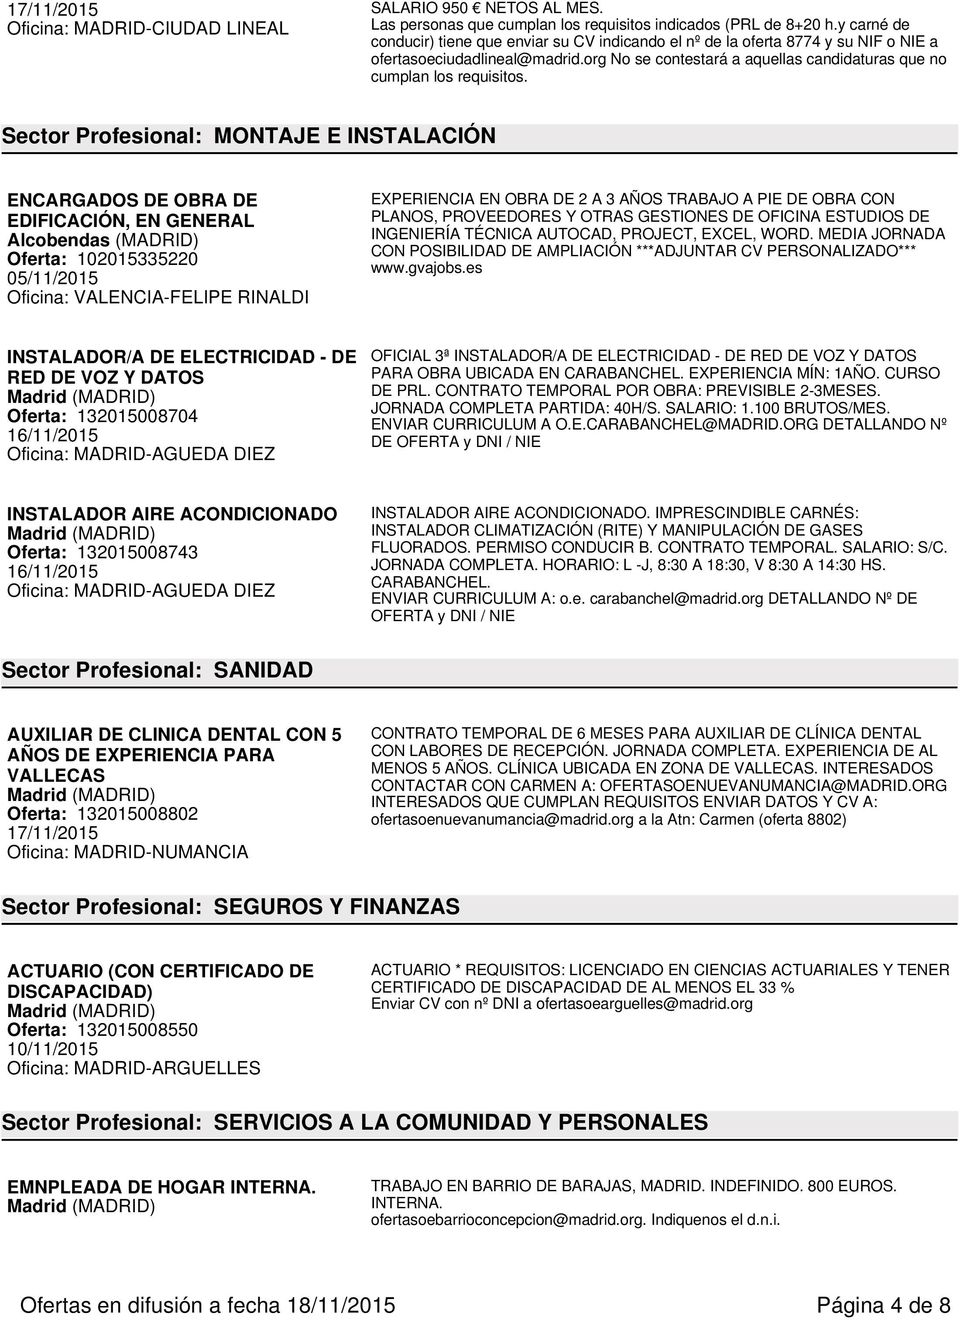 Sector Profesional: MONTAJE E INSTALACIÓN ENCARGADOS DE OBRA DE EDIFICACIÓN, EN GENERAL Alcobendas (MADRID) Oferta: 102015335220 05/11/2015 Oficina: VALENCIA-FELIPE RINALDI EXPERIENCIA EN OBRA DE 2 A